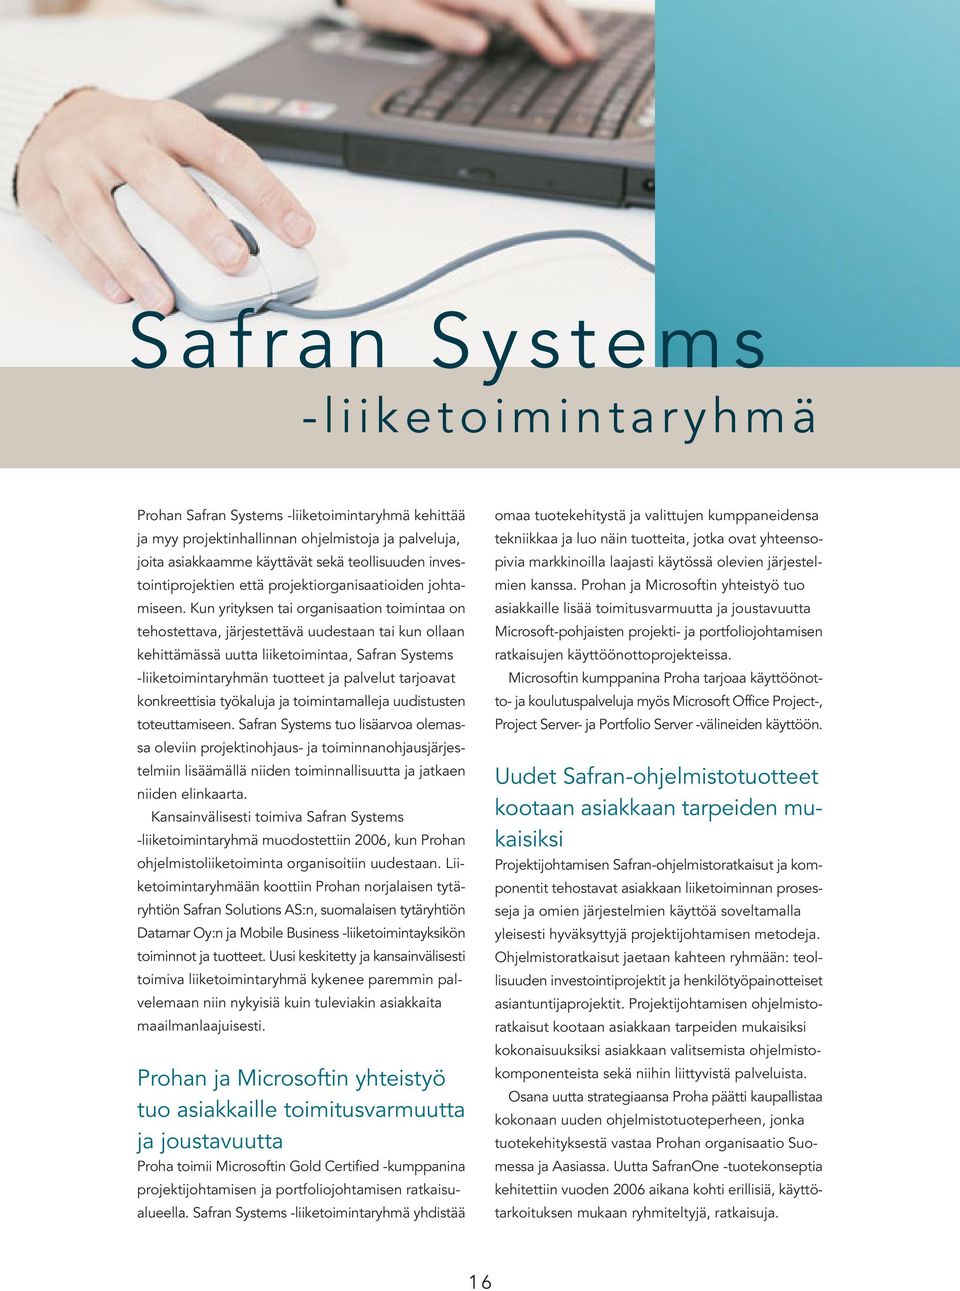 Kun yrityksen tai organisaation toimintaa on tehostettava, järjestettävä uudestaan tai kun ollaan kehittämässä uutta liiketoimintaa, Safran Systems -liiketoimintaryhmän tuotteet ja palvelut tarjoavat